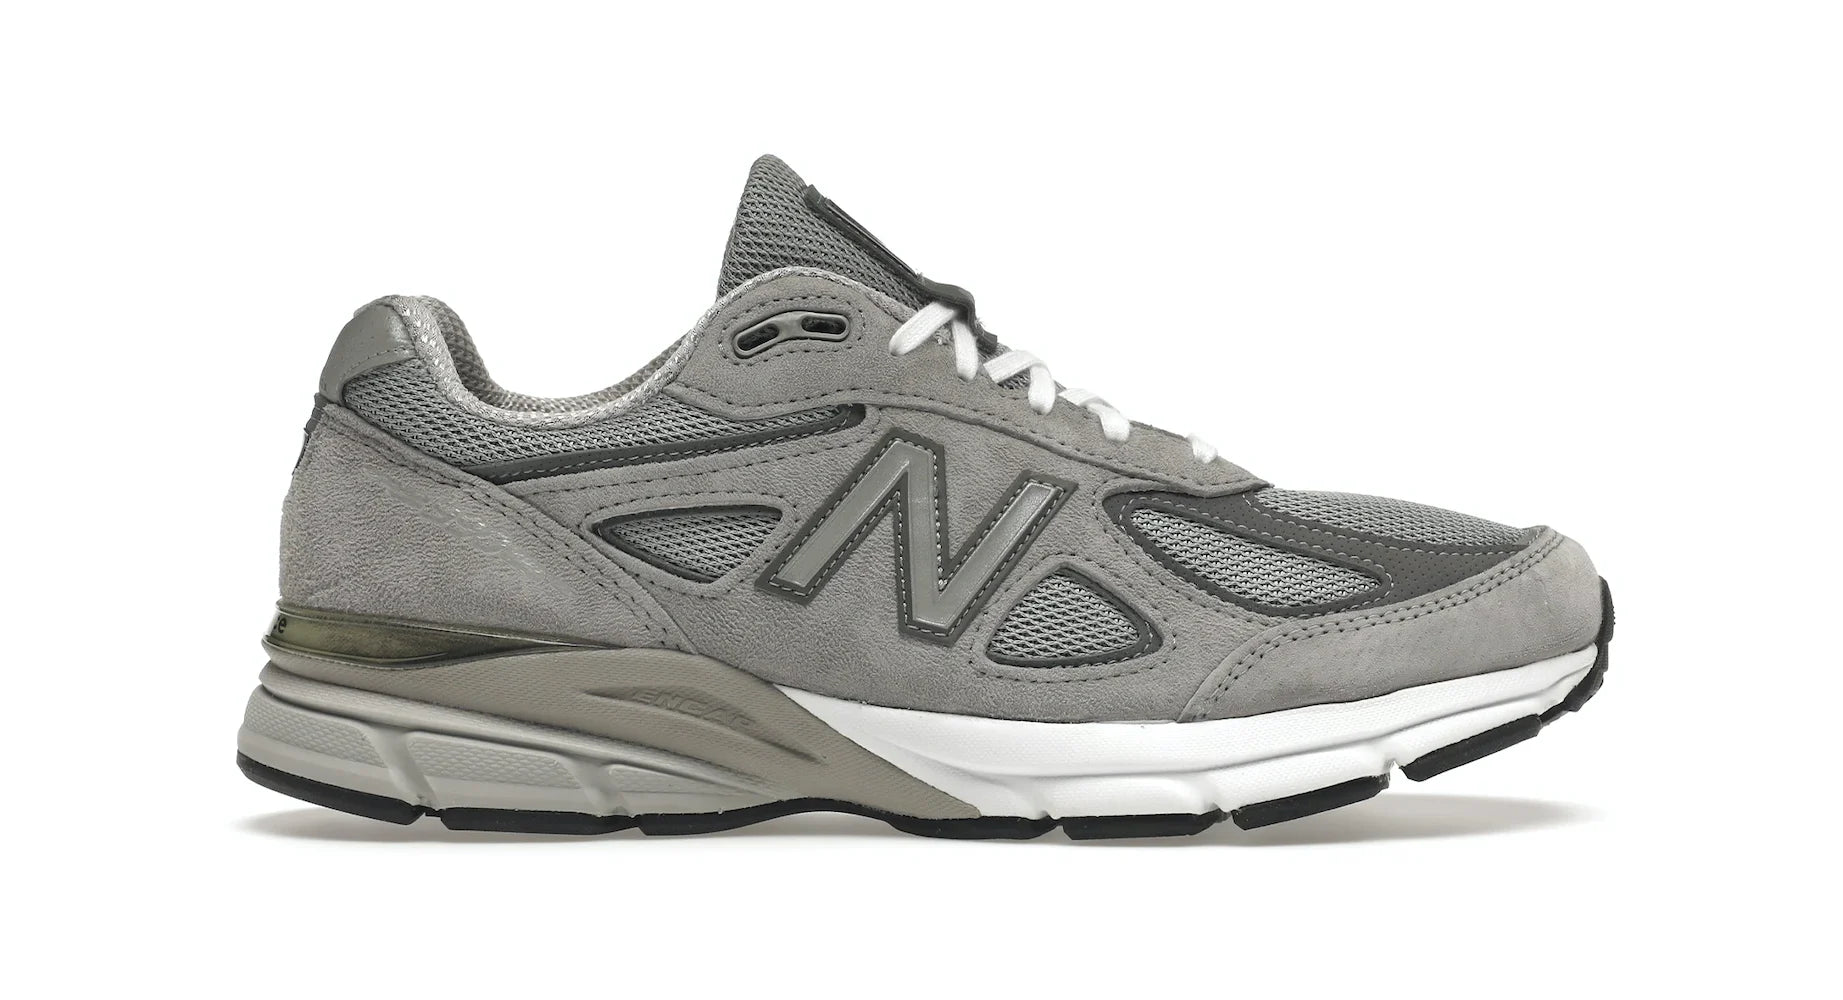 New Balance 990v4 Grey